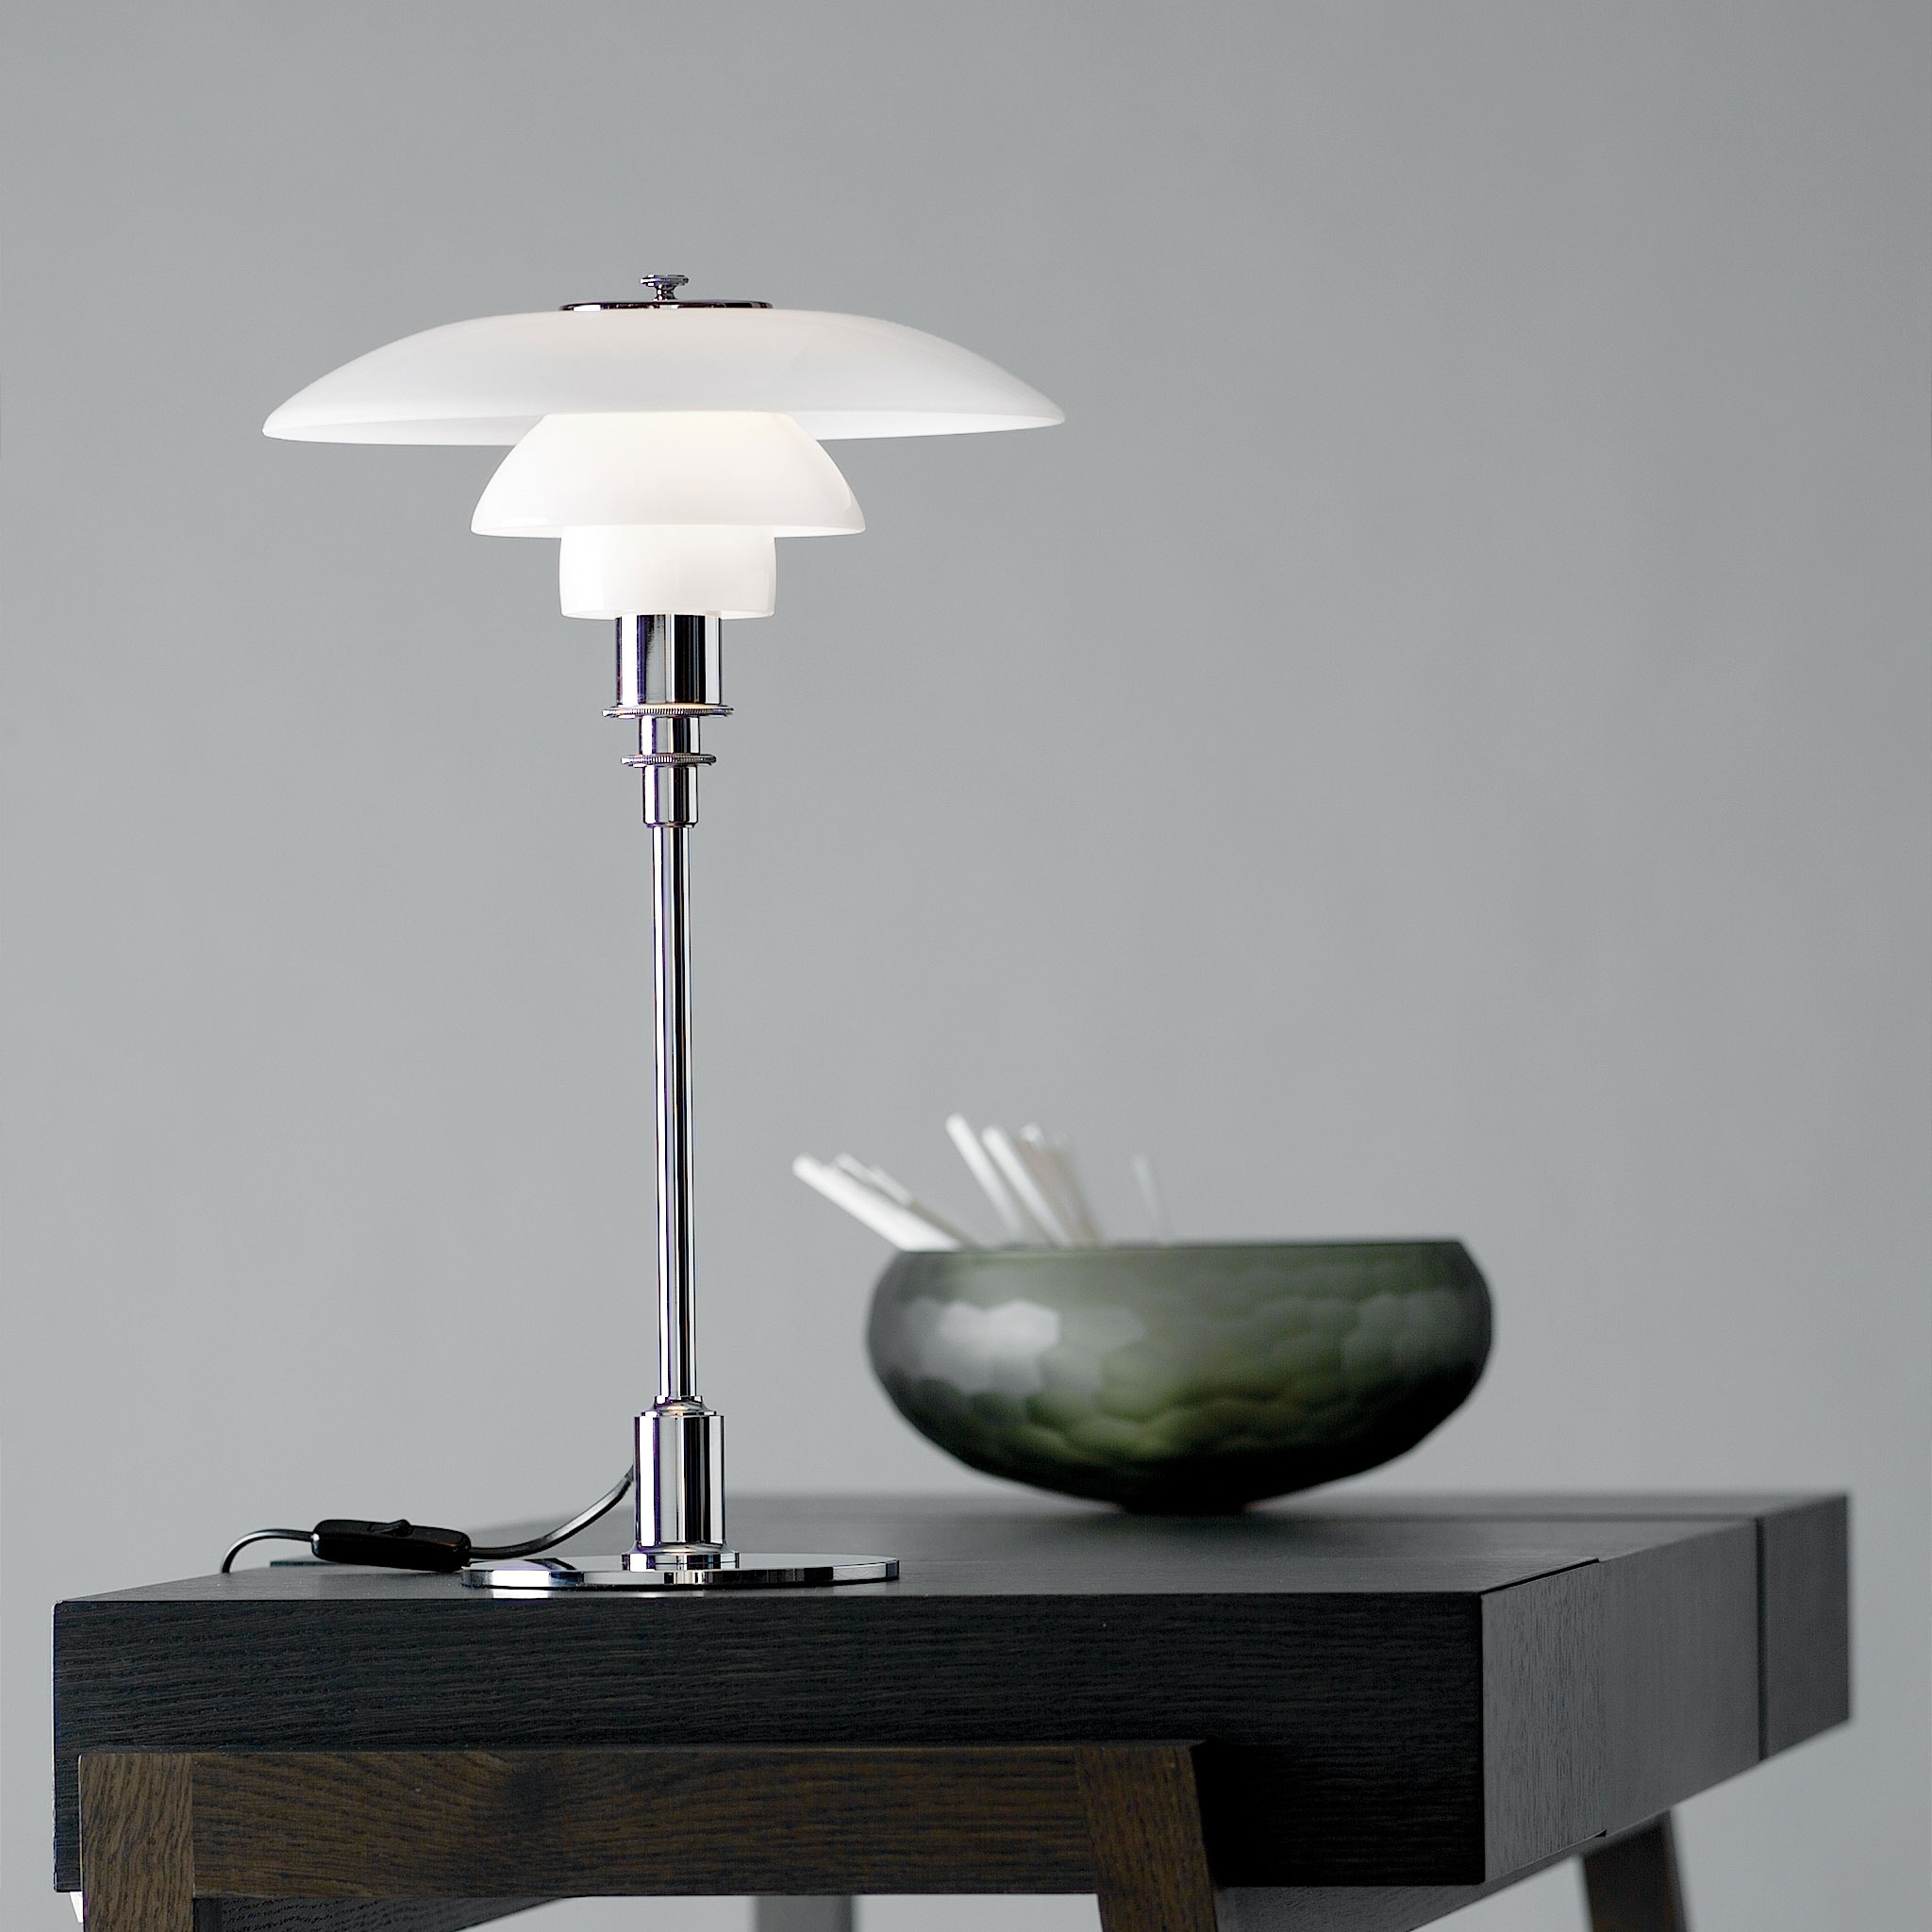 PH lampe designet av Poul Henningsen